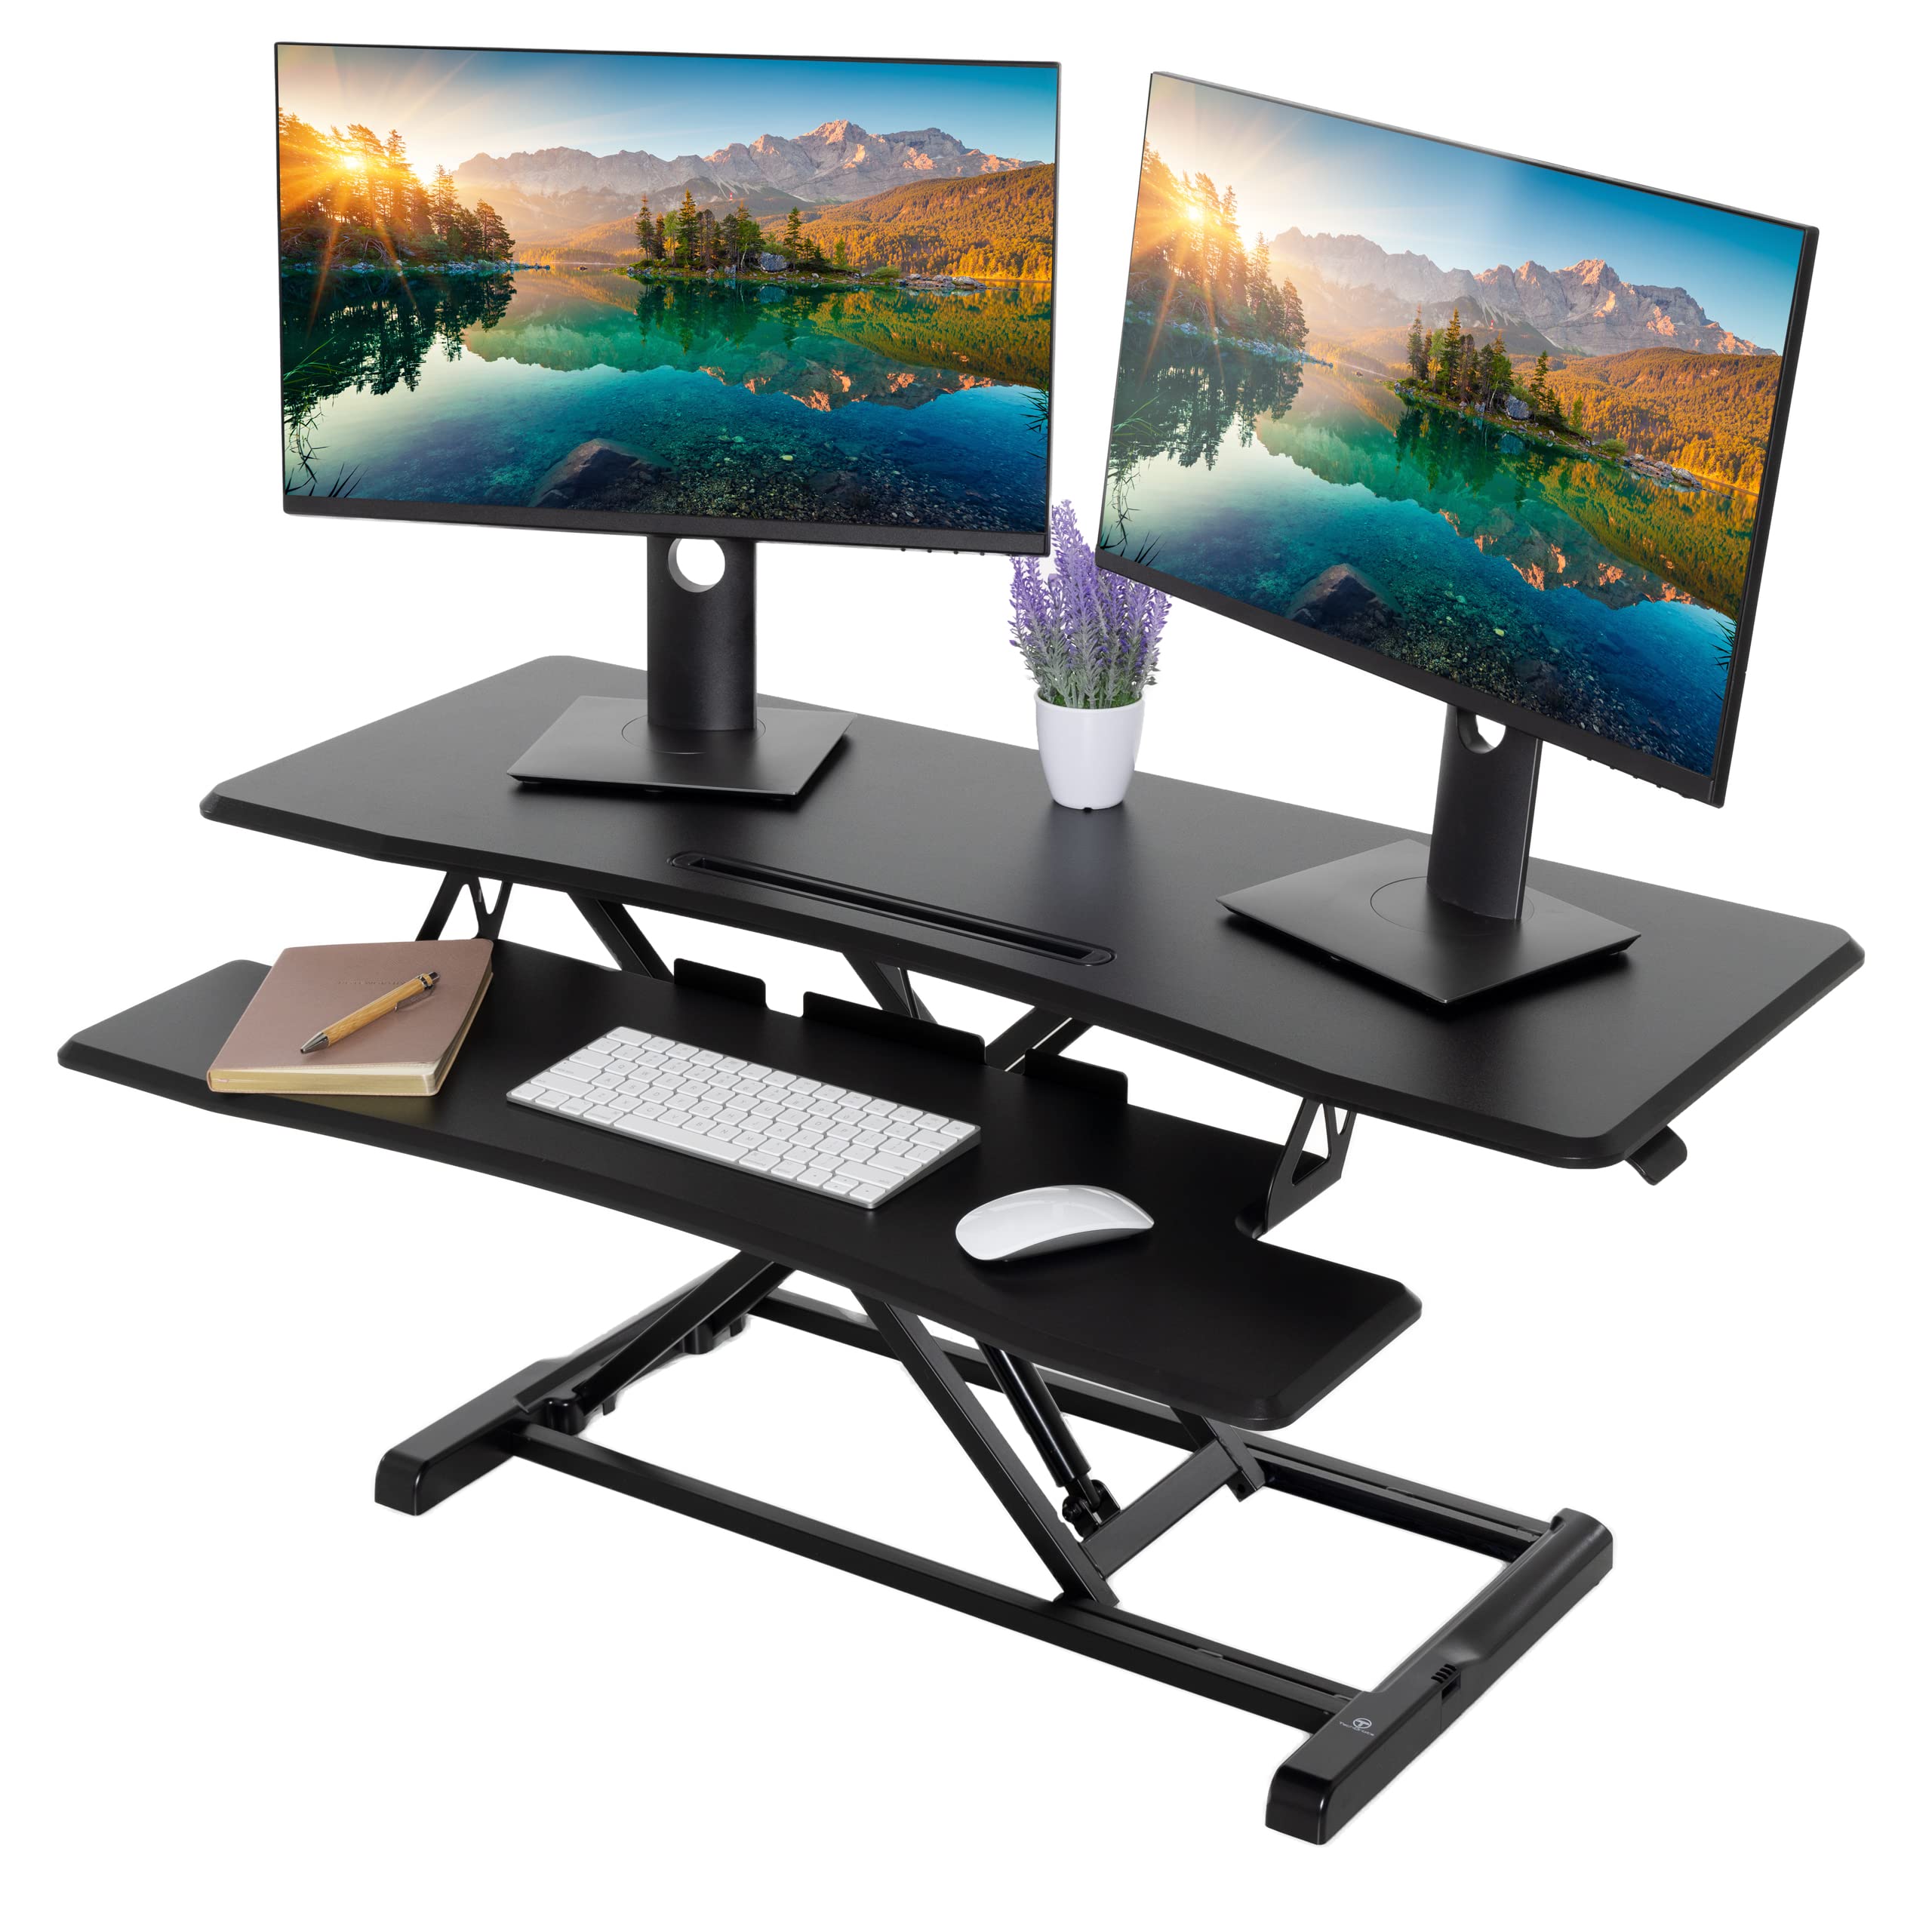 Techorbits Standing Desk Converter - 42 Inch Adjustable Sit To Stand Up Desk Workstation, Mdf Wood, Ergonomic Desk Riser With Ke